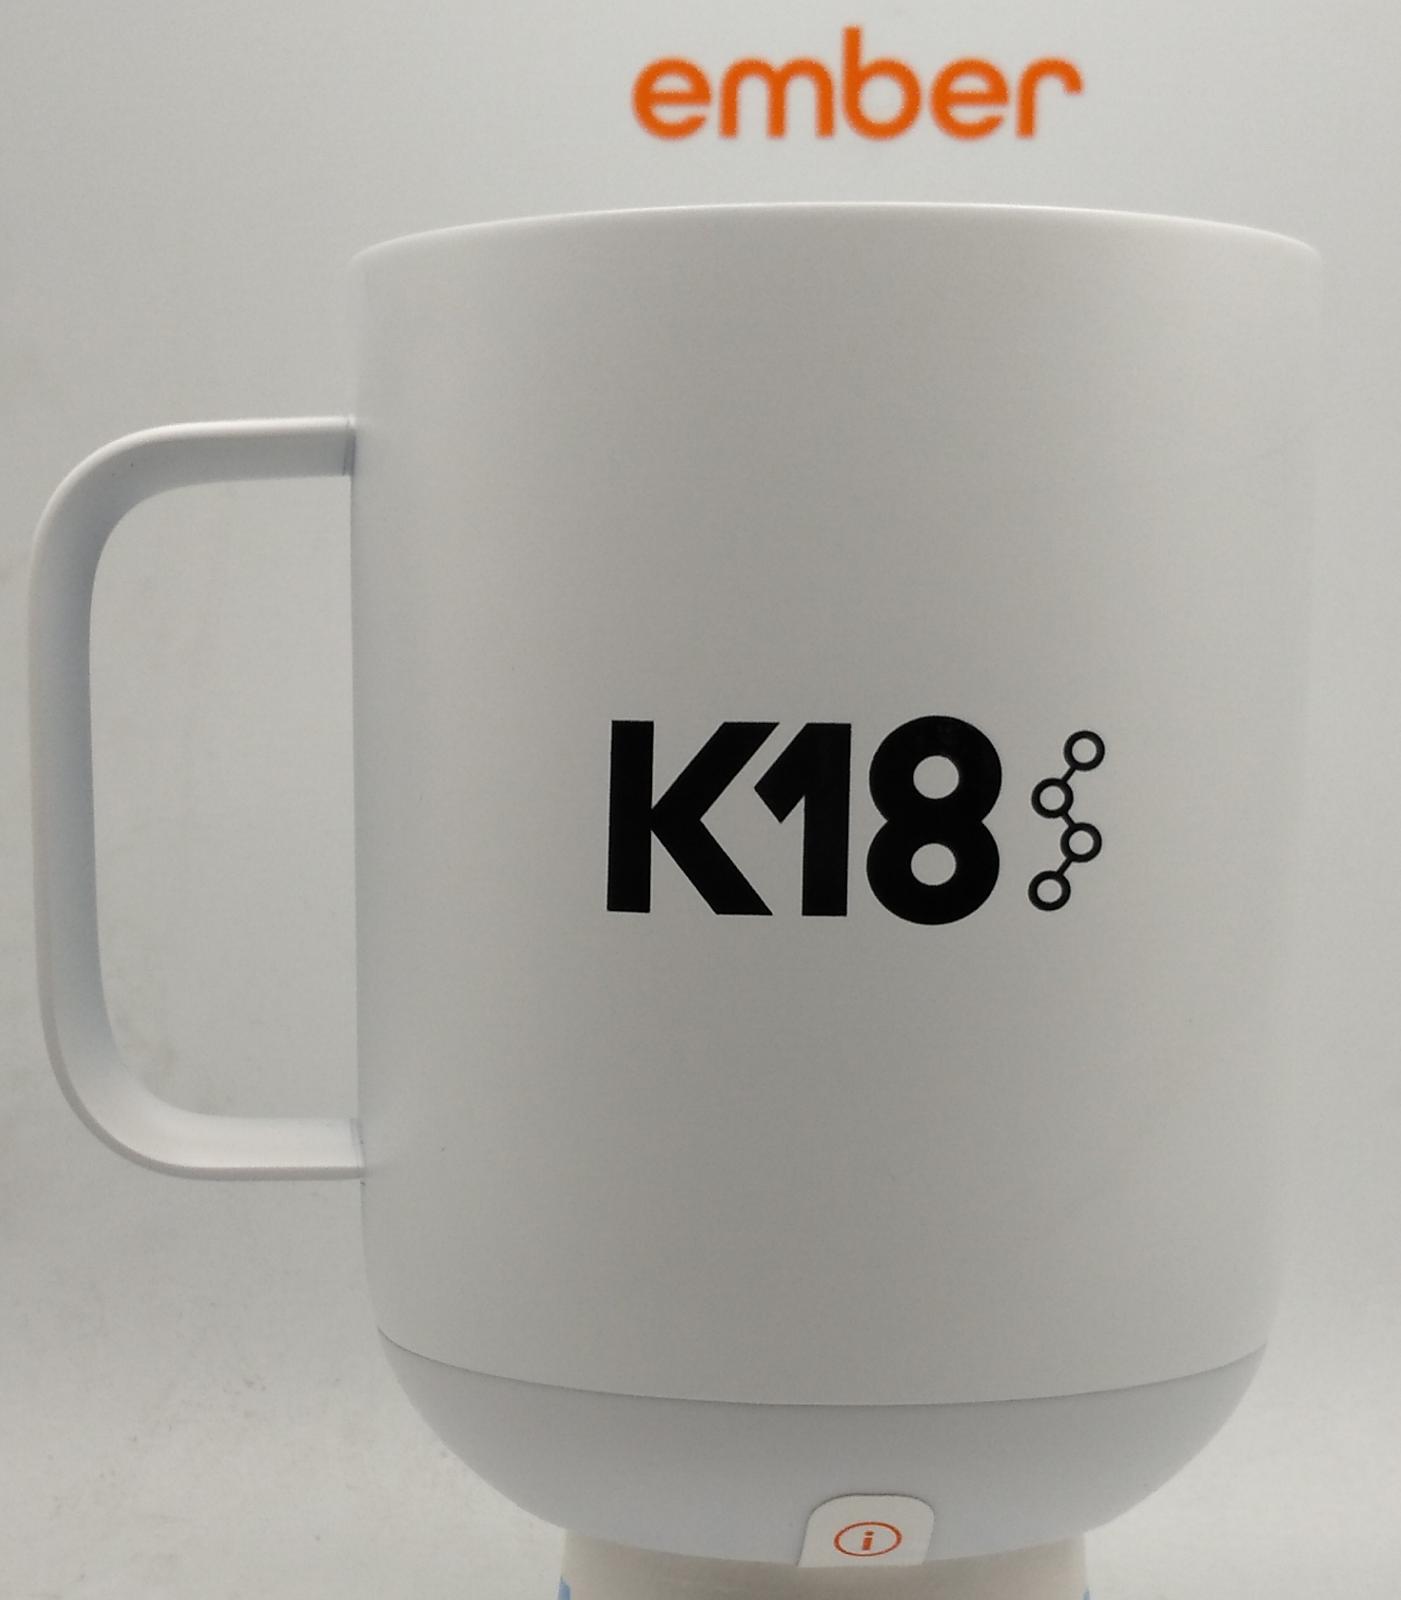 10 oz. Ember Mug custom printed up to 4 color or laser engraved